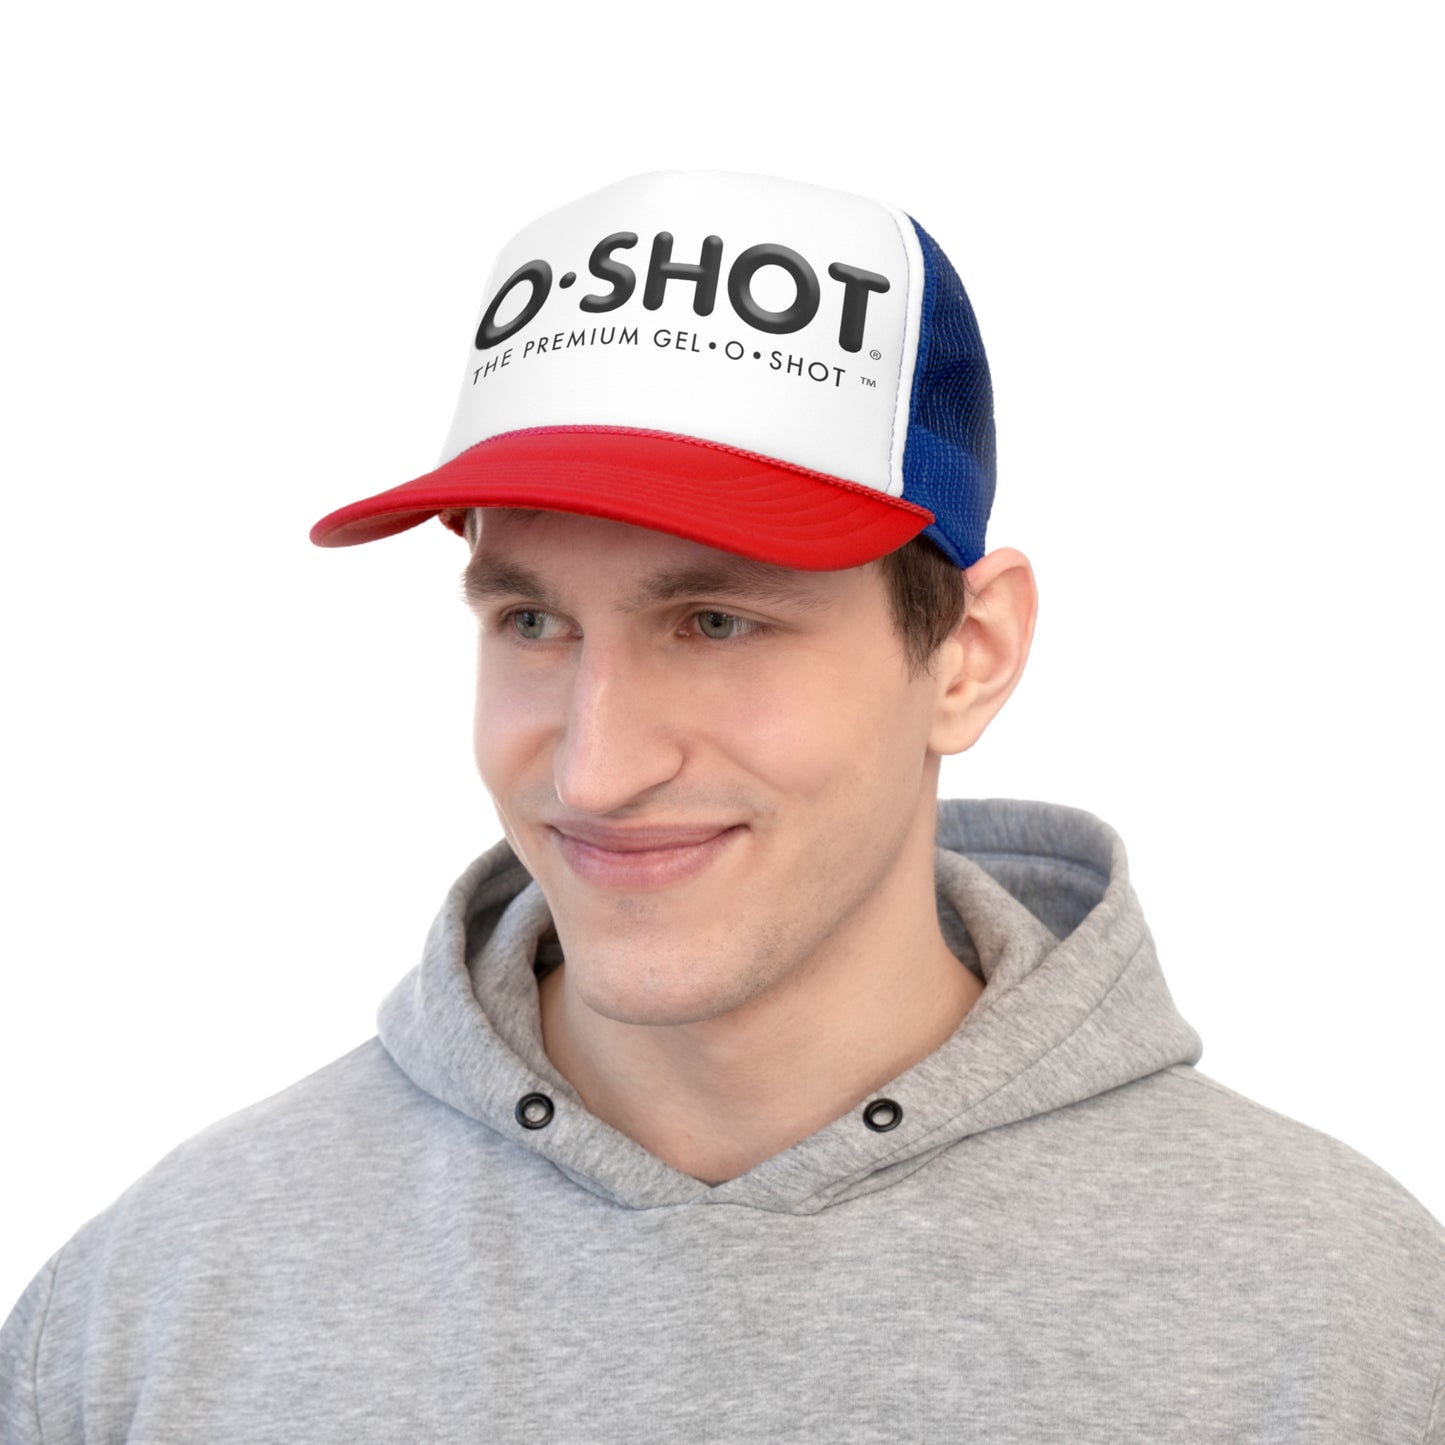 OG O-SHOT Trucker Caps